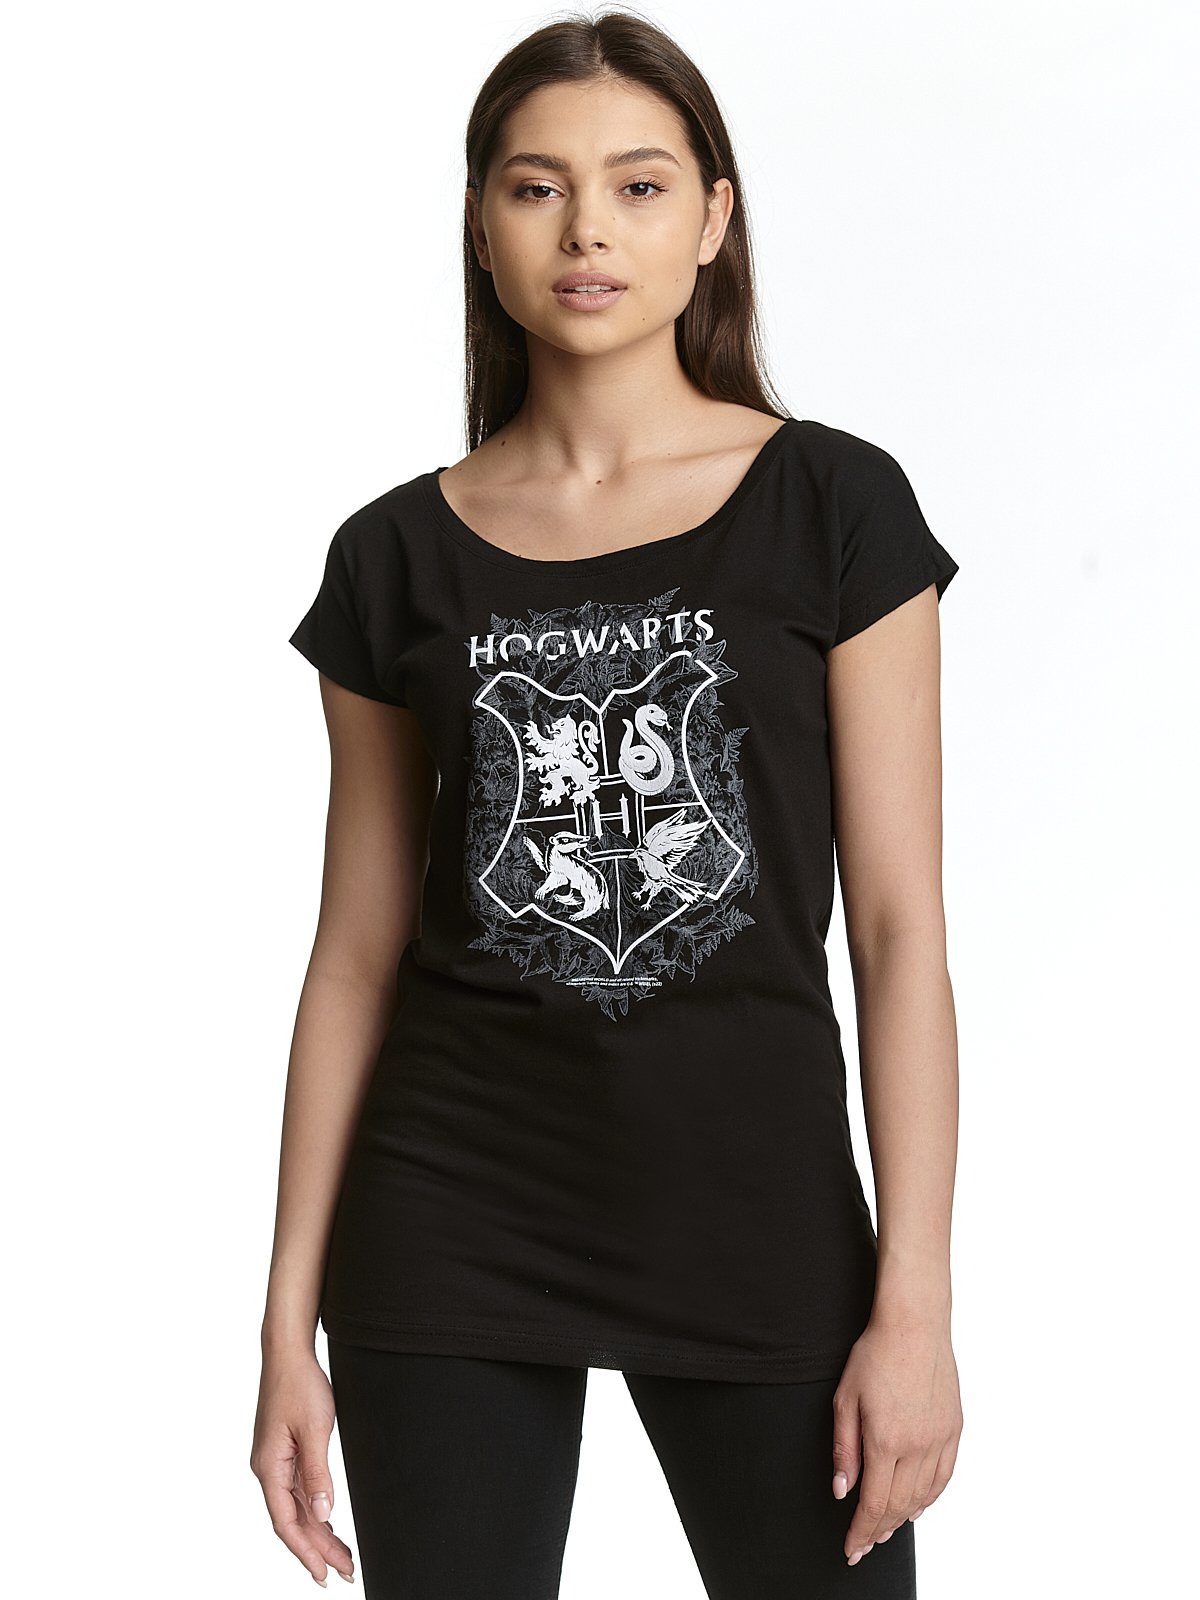 T-Shirt Hogwarts Area Grey Potter Harry Warner